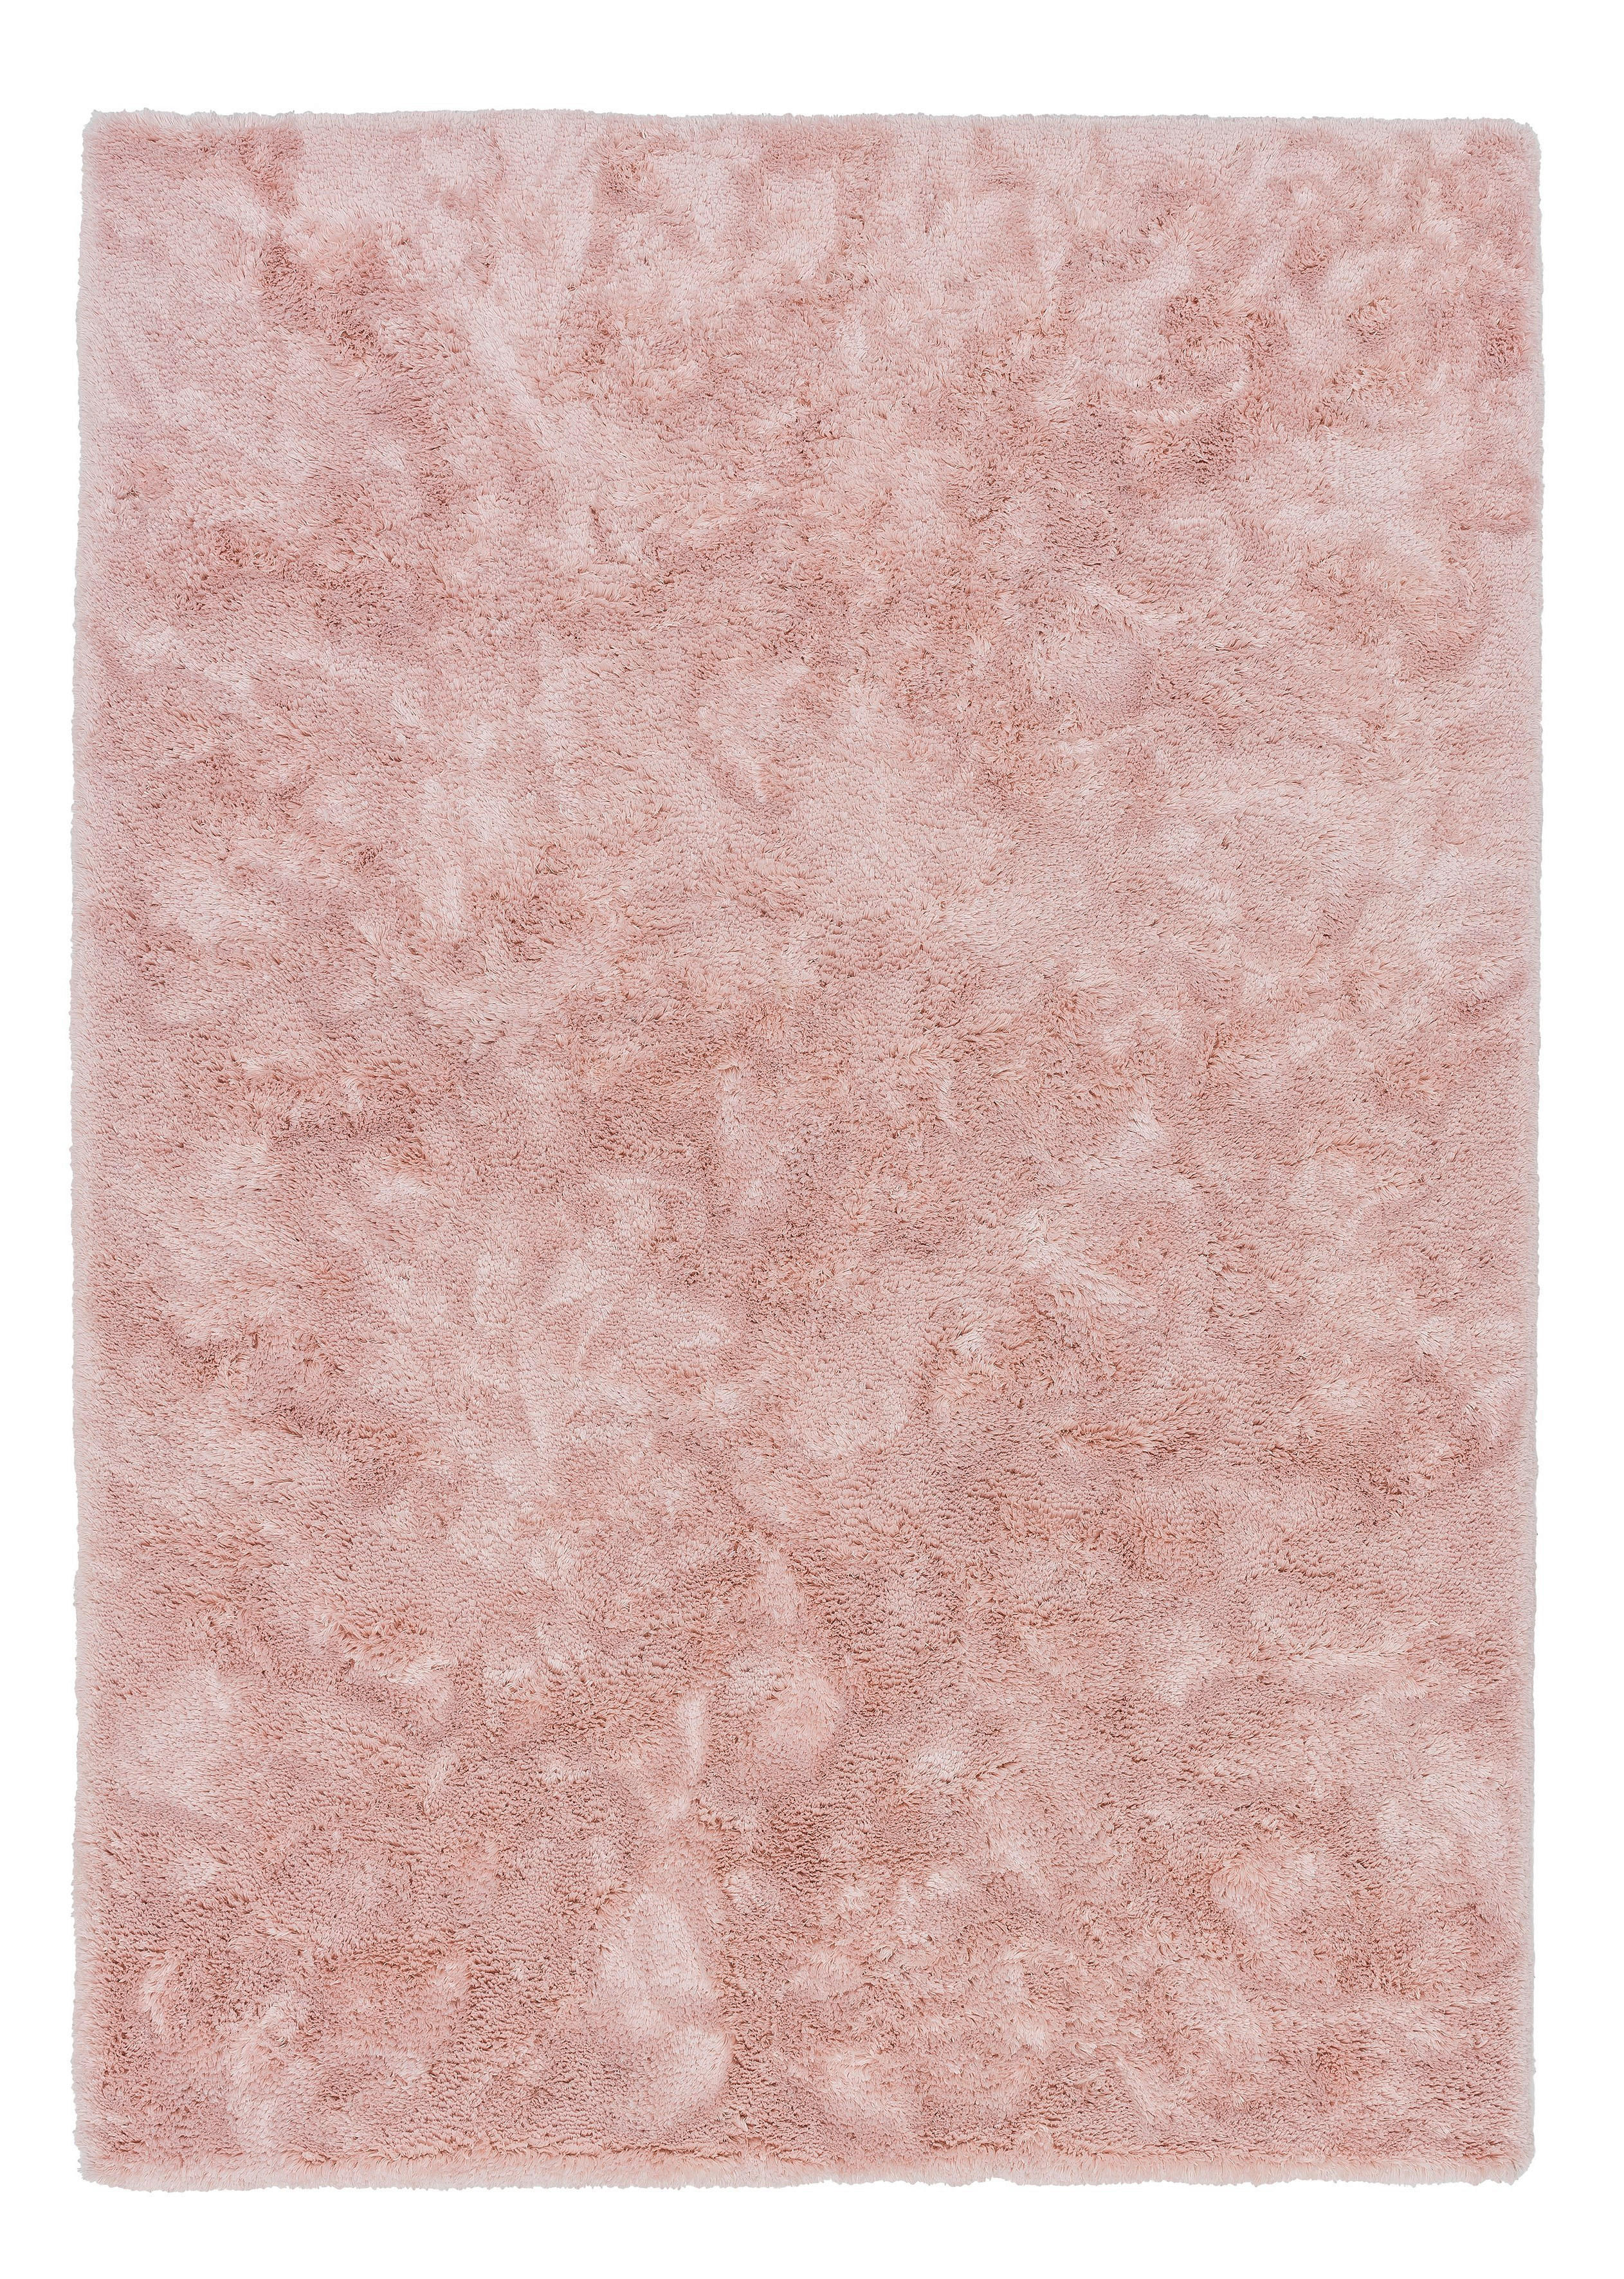 HOCHFLORTEPPICH  70/140 cm  getuftet  Rosa   - Rosa, Basics, Textil (70/140cm) - Schöner Wohnen